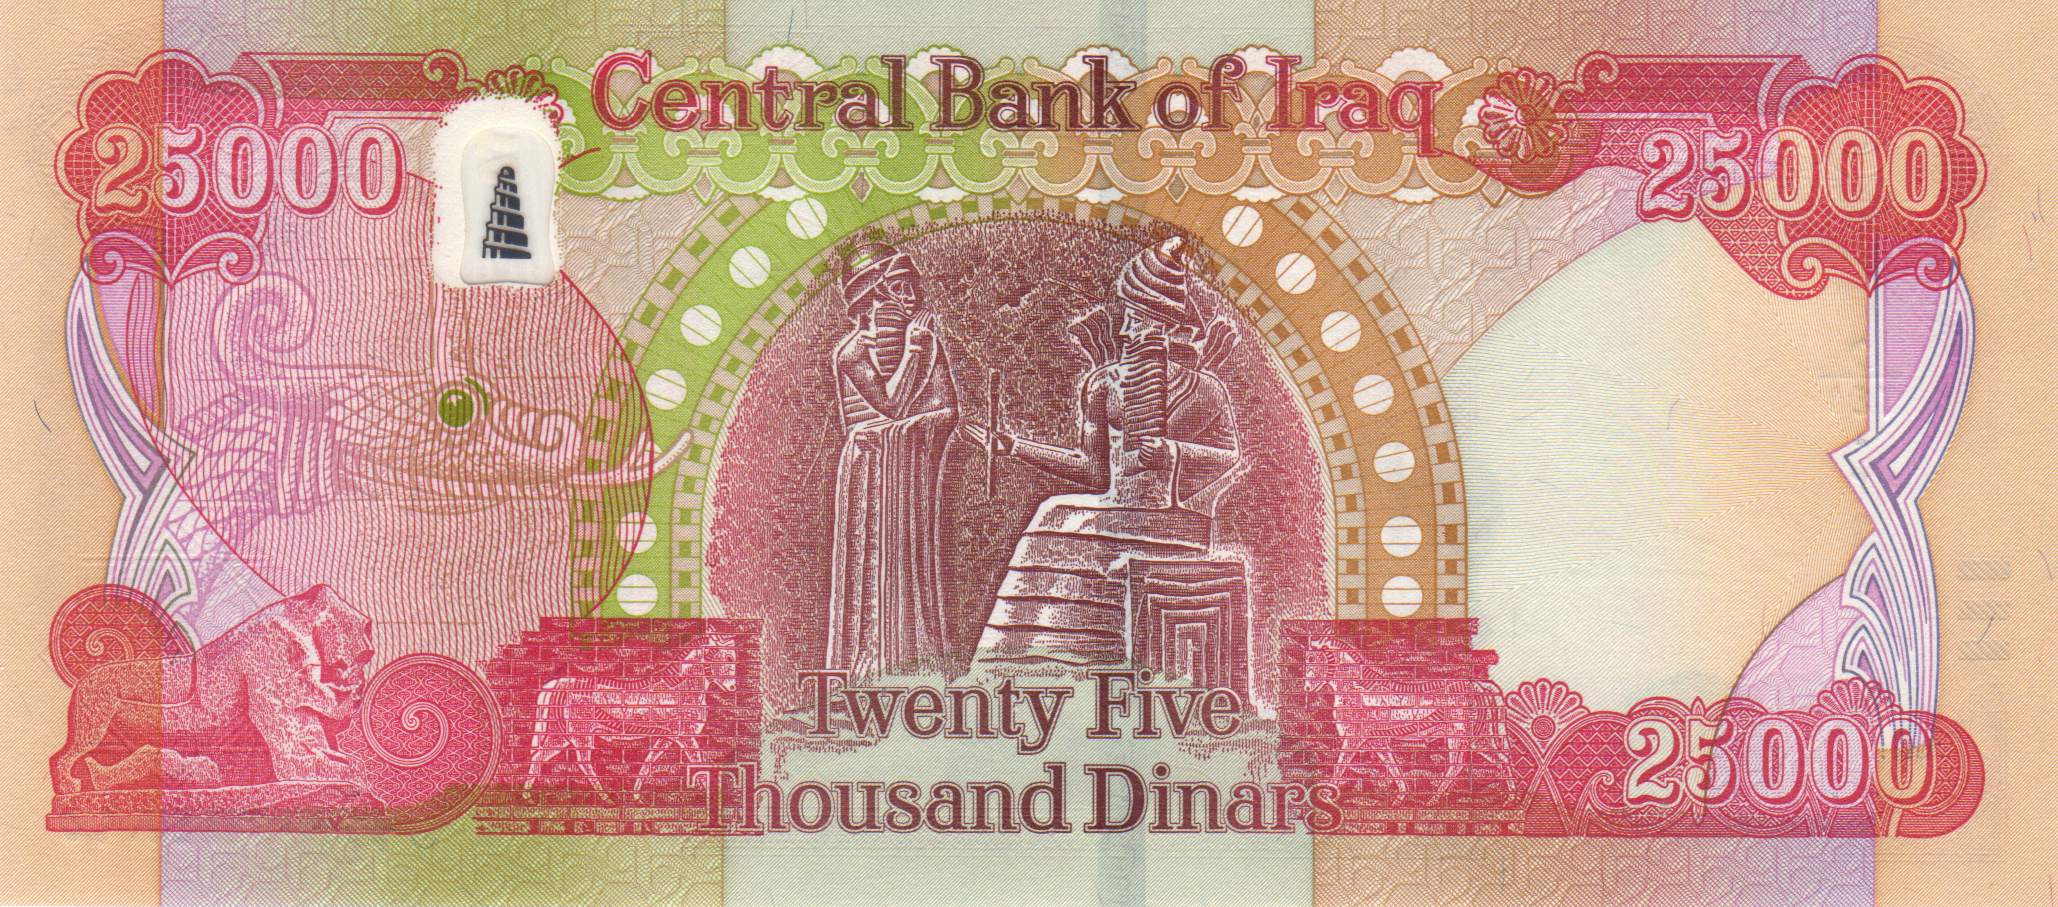 Iraq_CBI_25000_dinars_2021.00.00_B356f_P